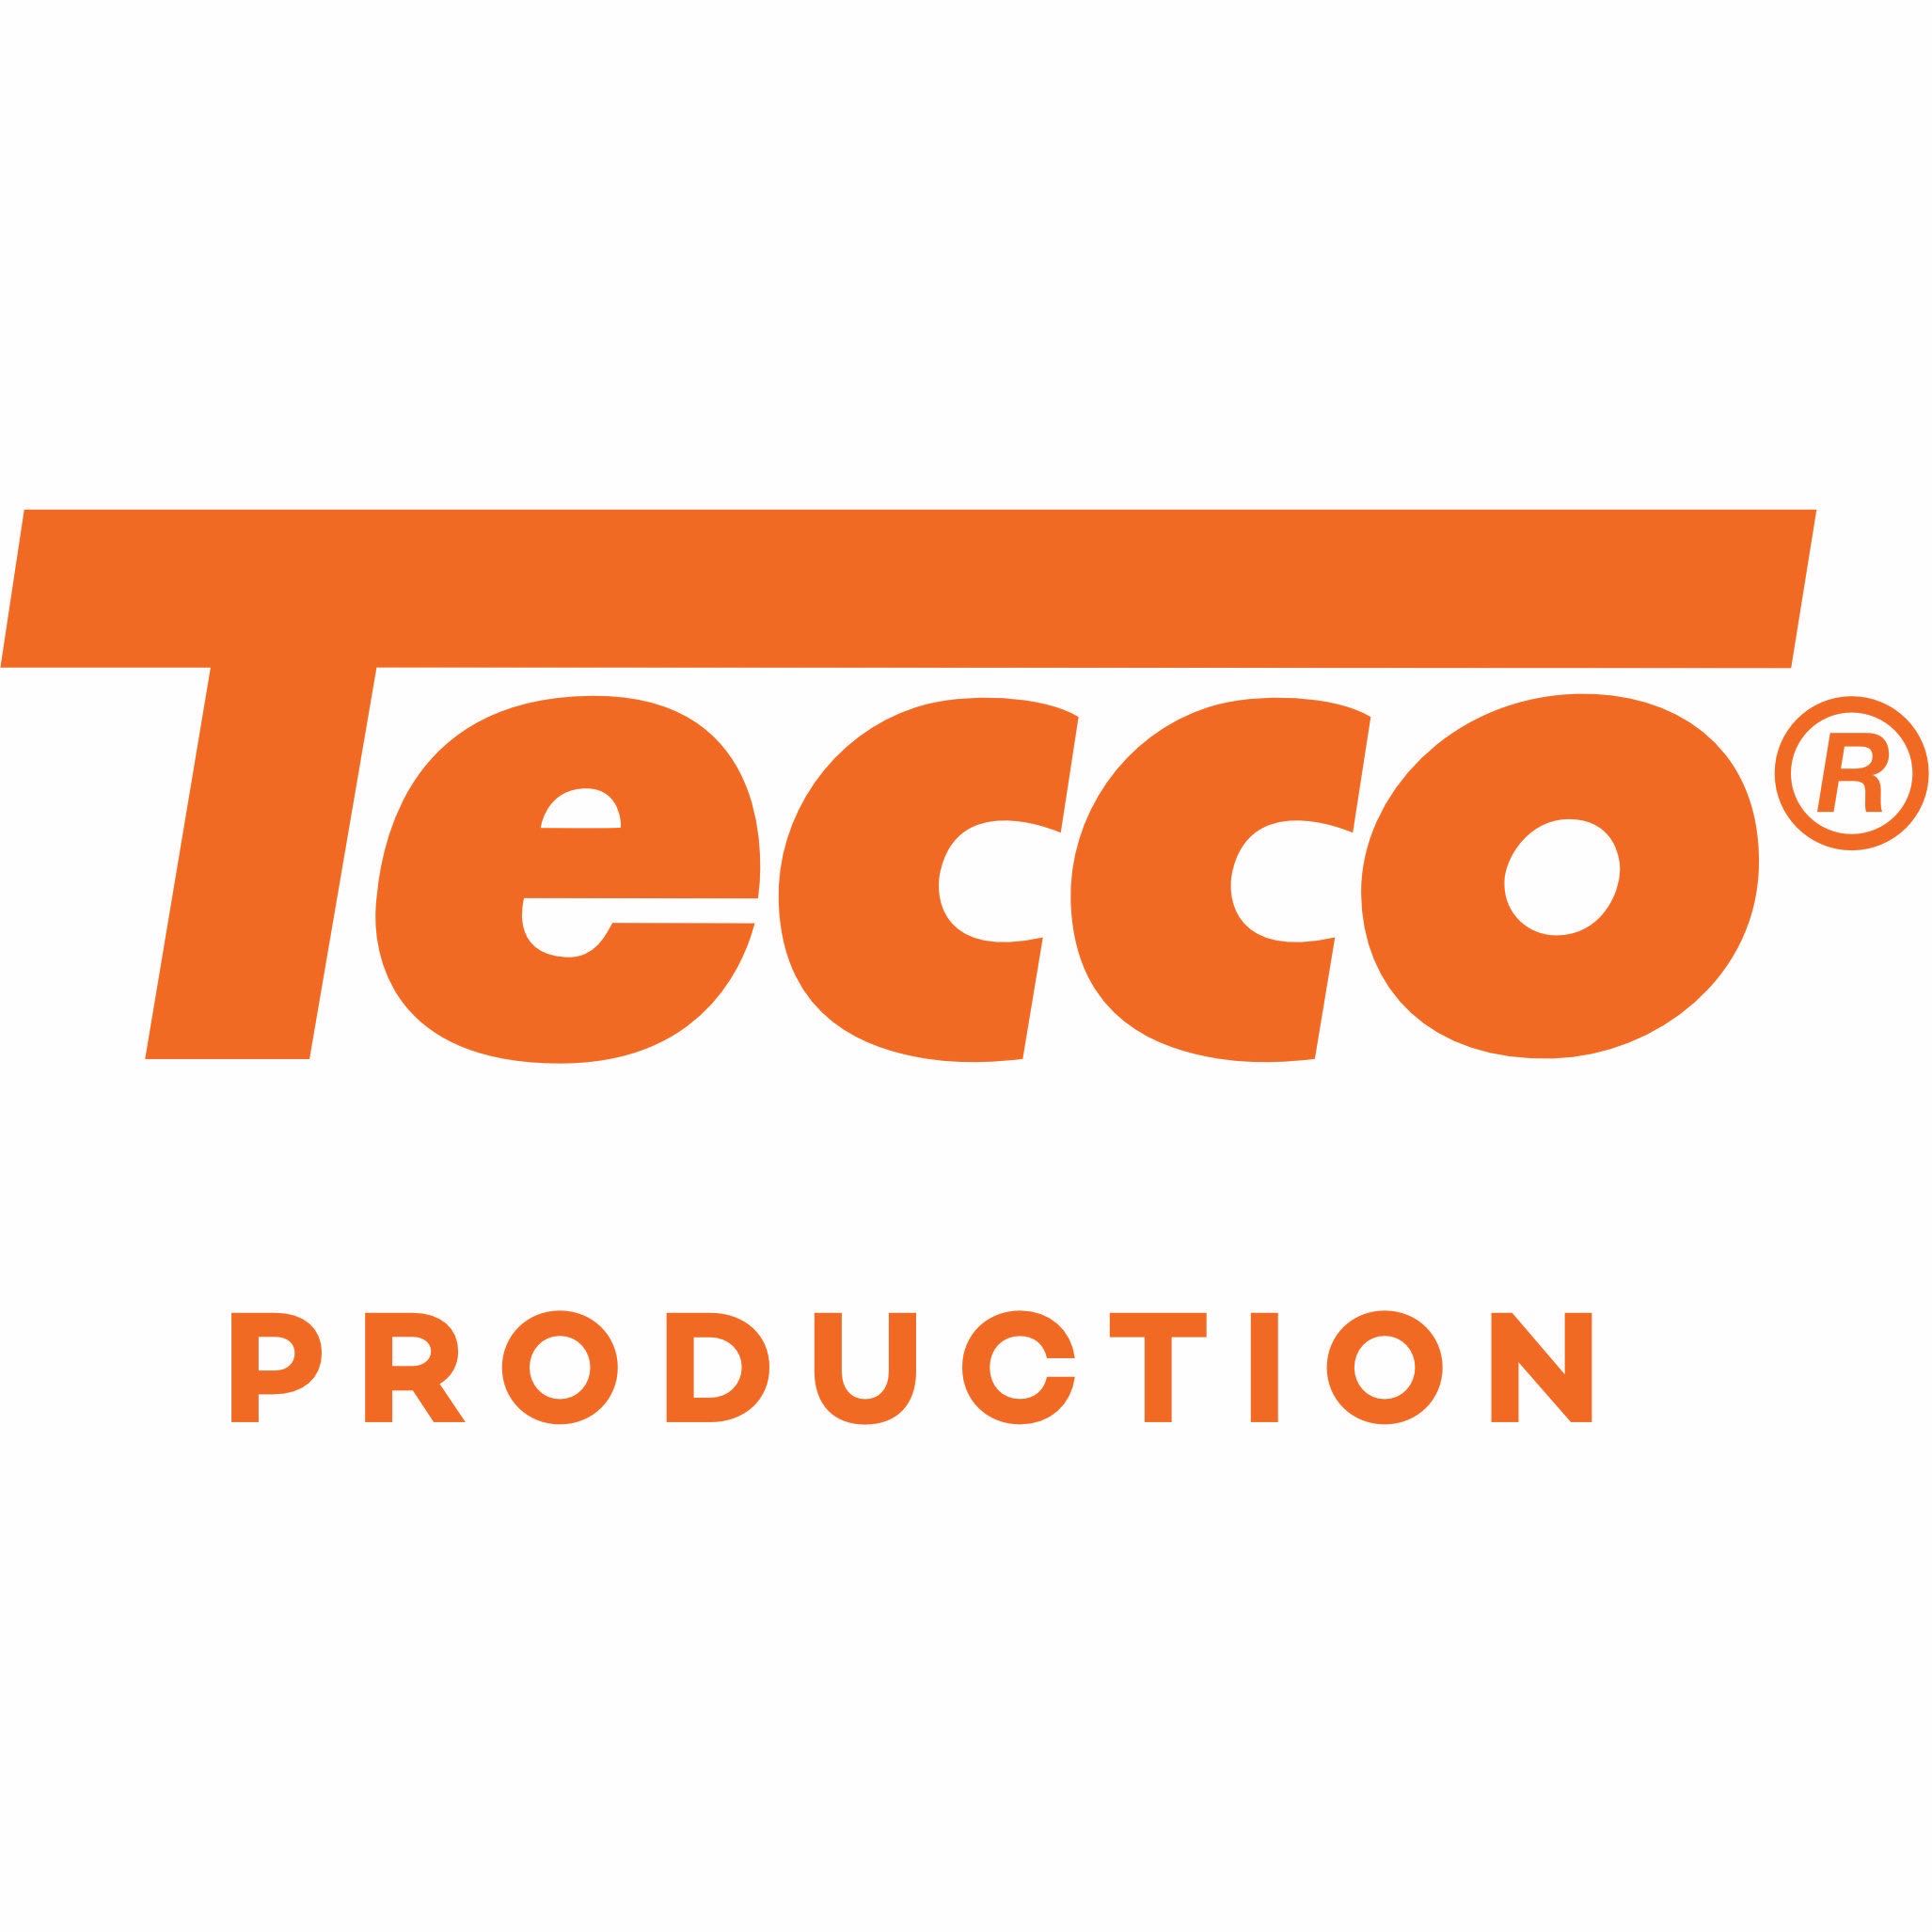 Tecco:Production Papiere